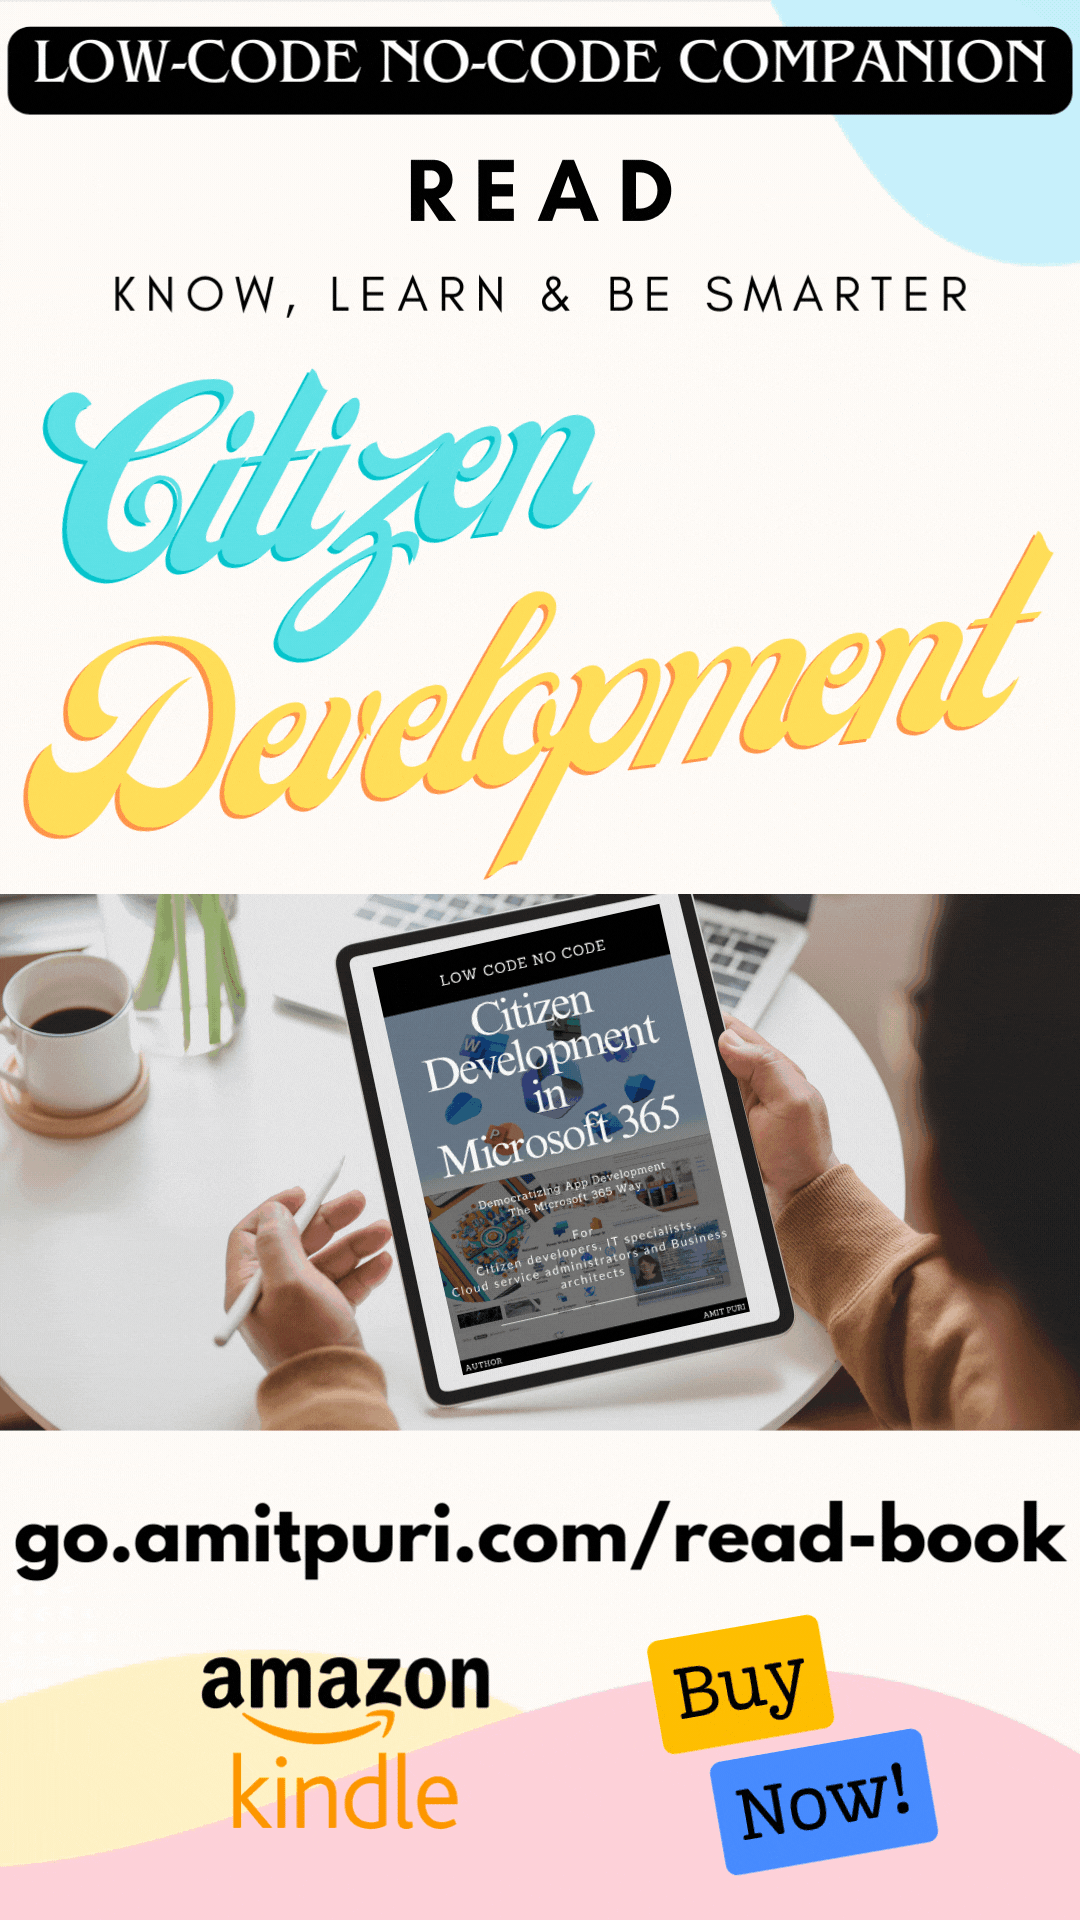 Low-code No-code companion - Citizen Development